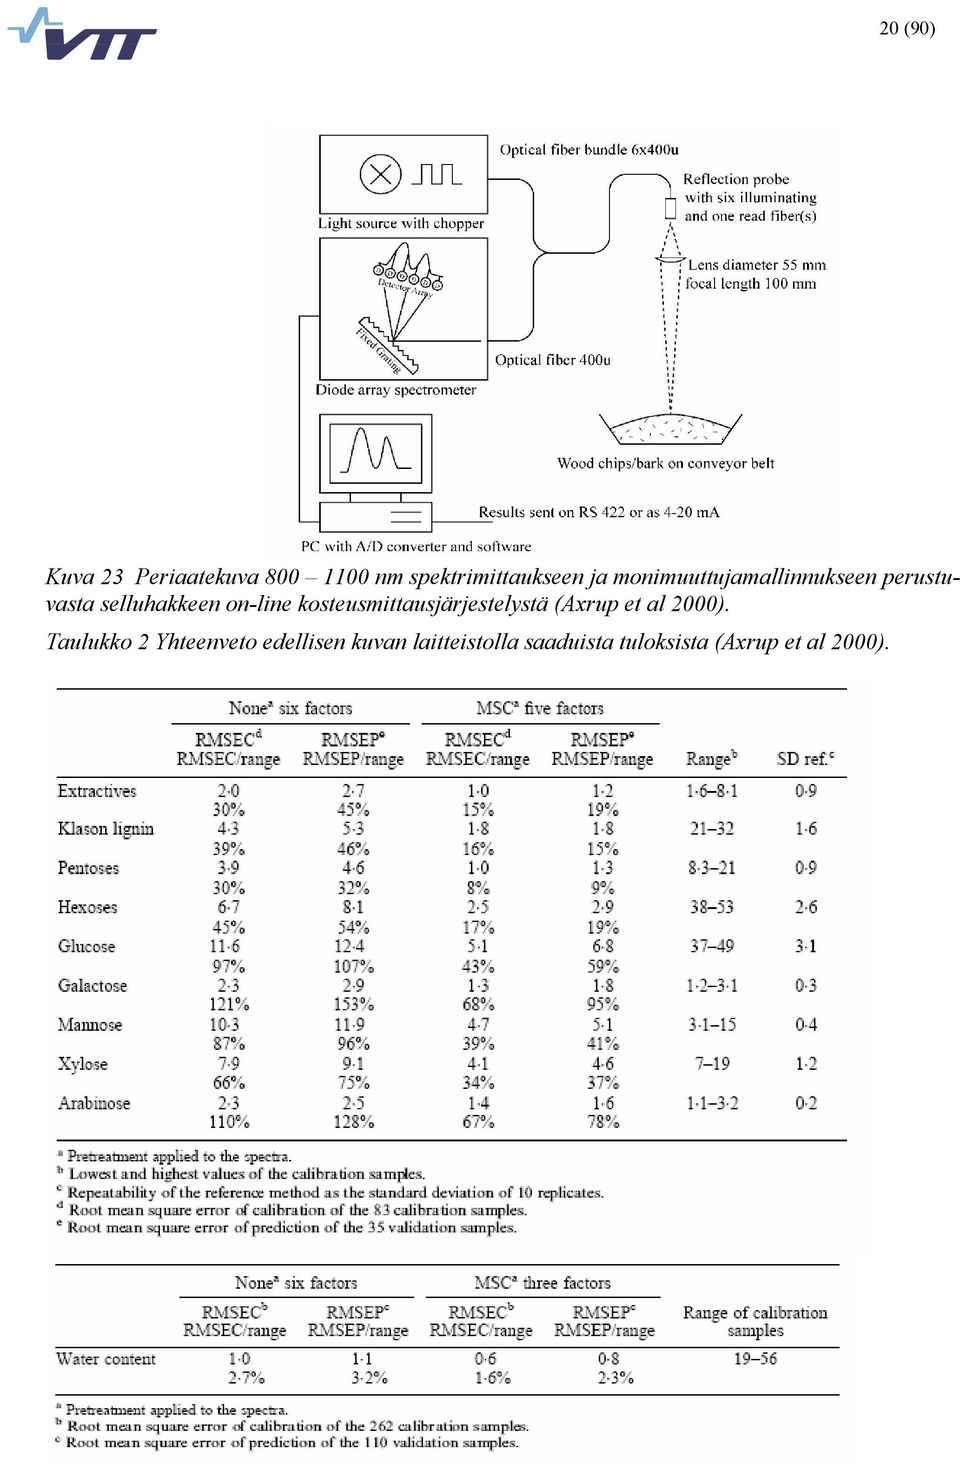 kosteusmittausjärjestelystä (Axrup et al 2000).